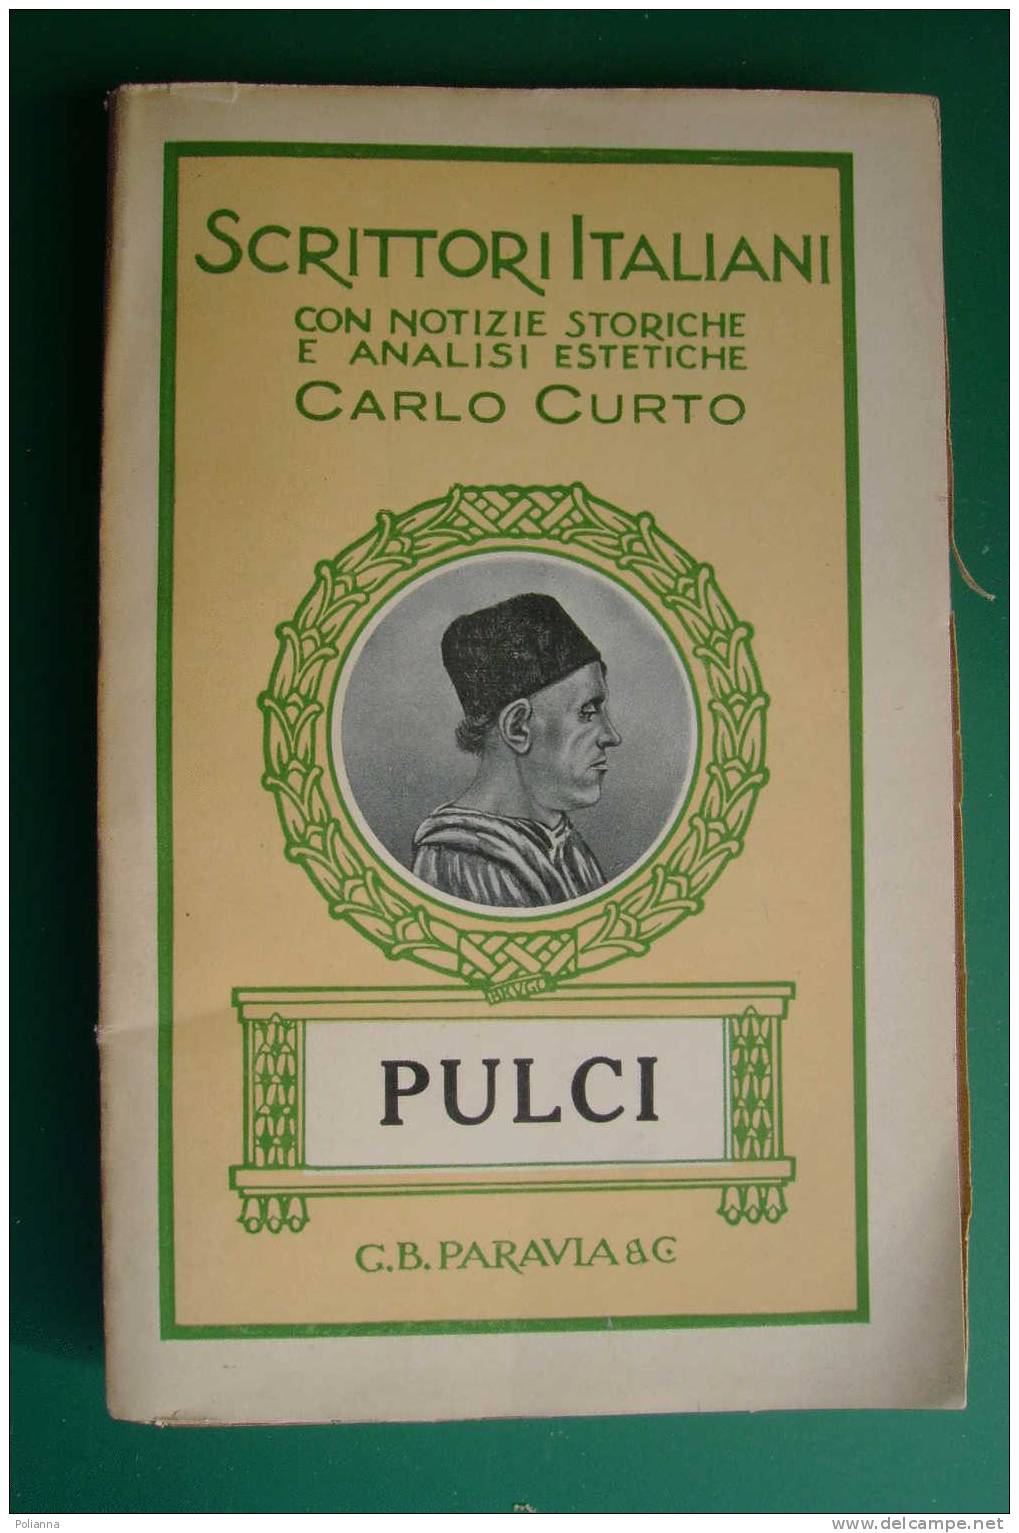 PDD/43 Scrittori Italiani - Carlo Curto - PULCI  Paravia 1932 - History, Biography, Philosophy